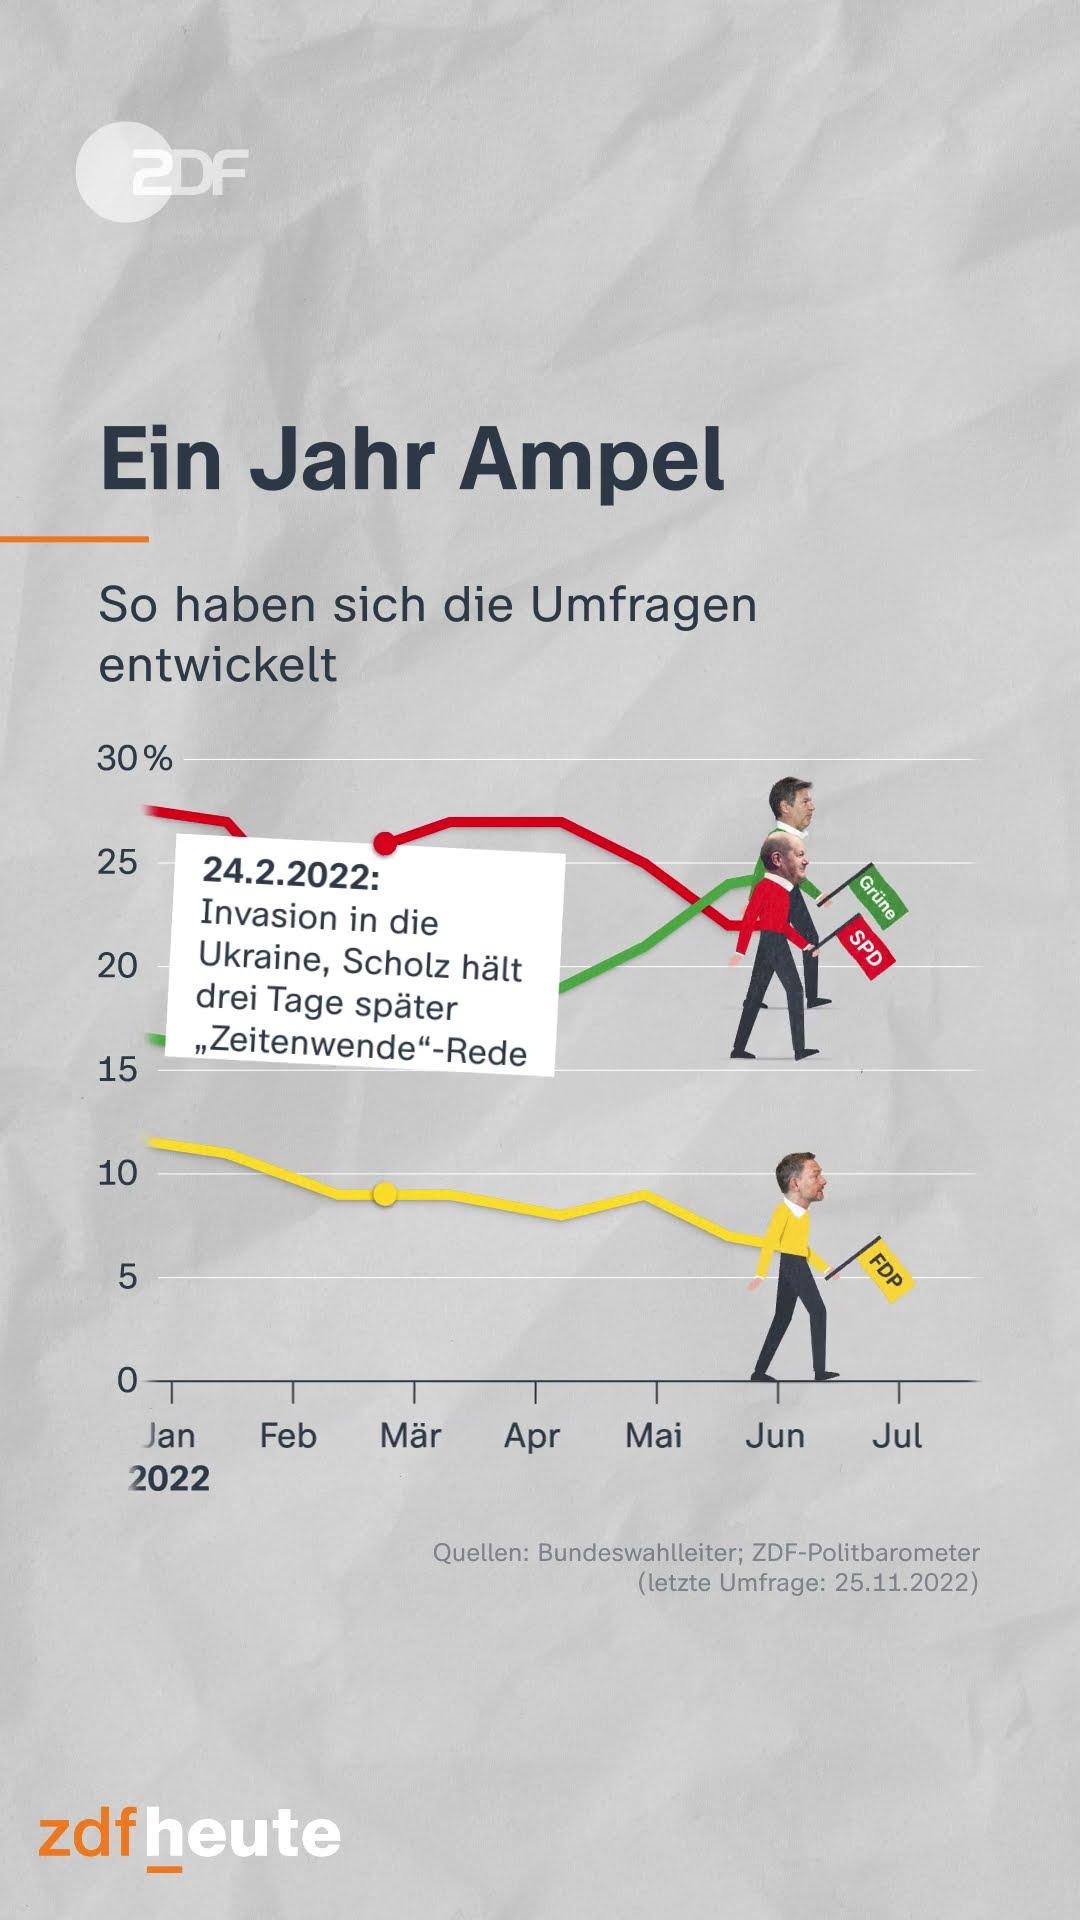 BUNDESPARTEITAG: FDP steckt Kurs zur Ampel ab - SPD warnt Partei!